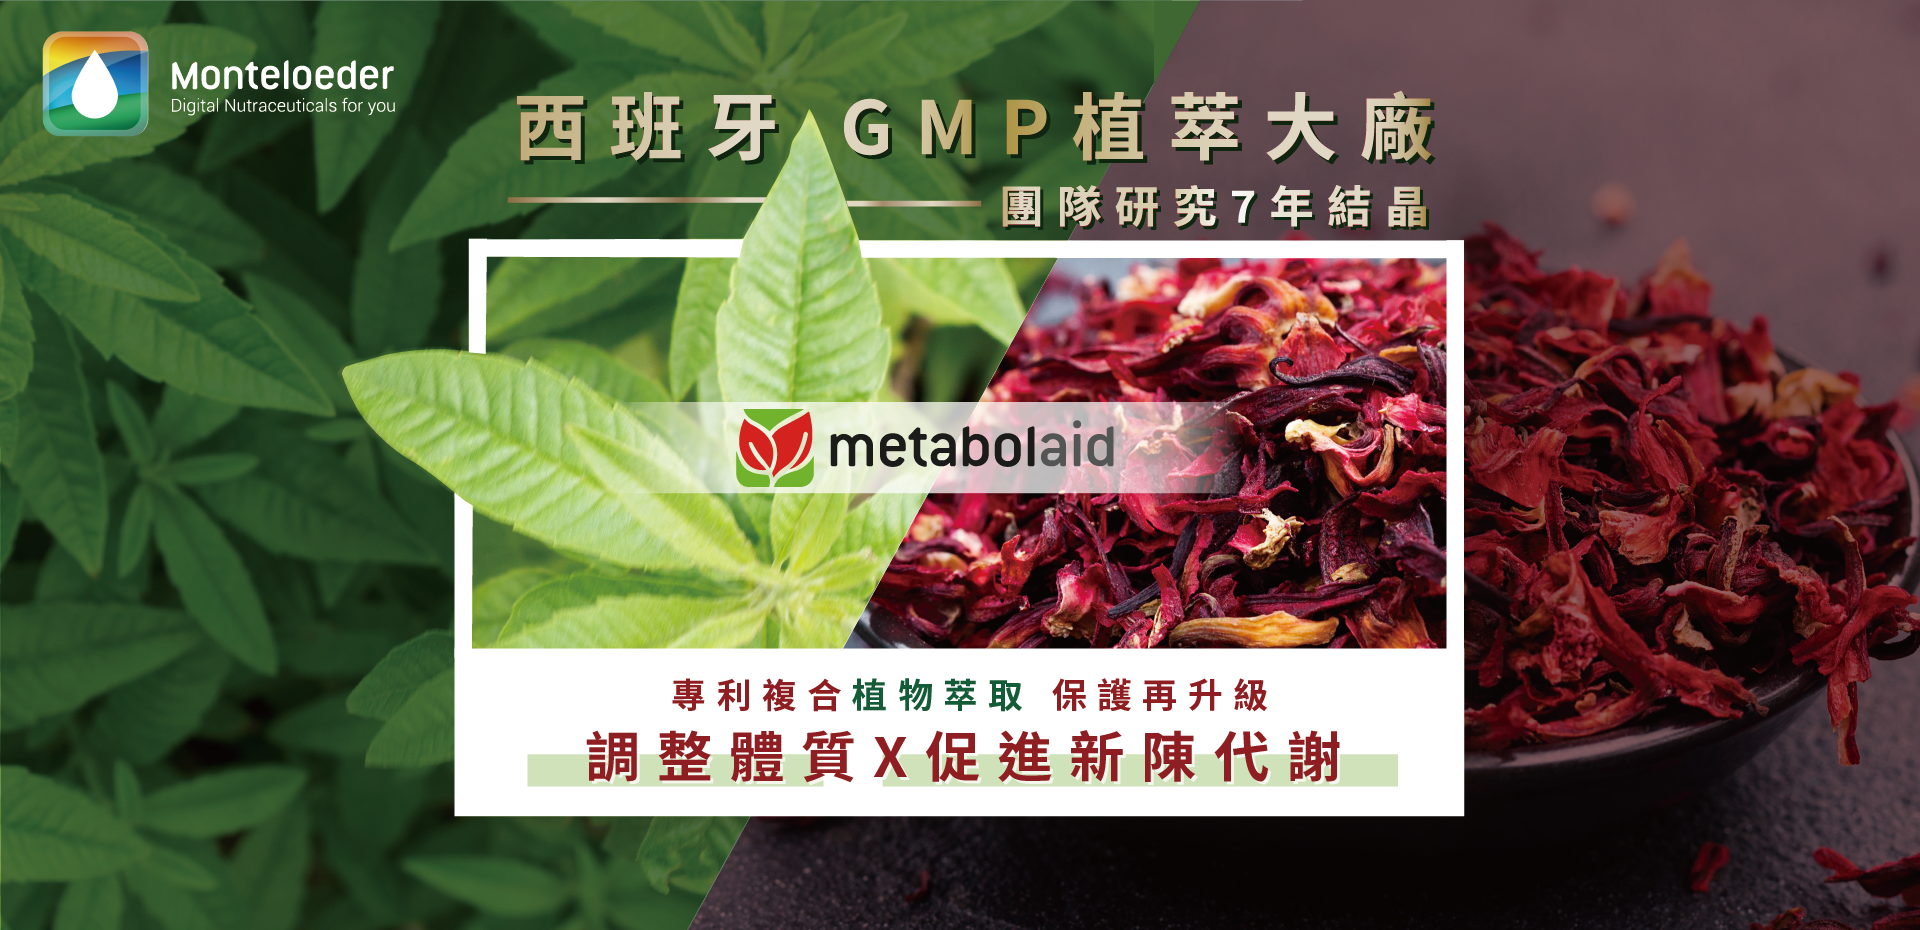 西班牙GMP植萃大廠 metabolaid 專利複合植物萃取 線上發表會